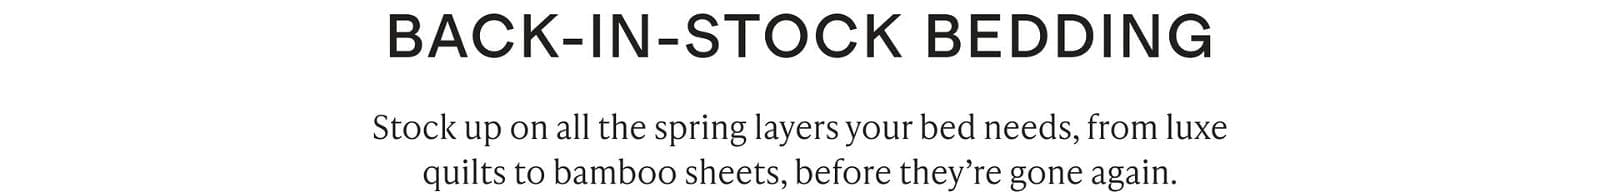 BACK-IN-STOCK BEDDING